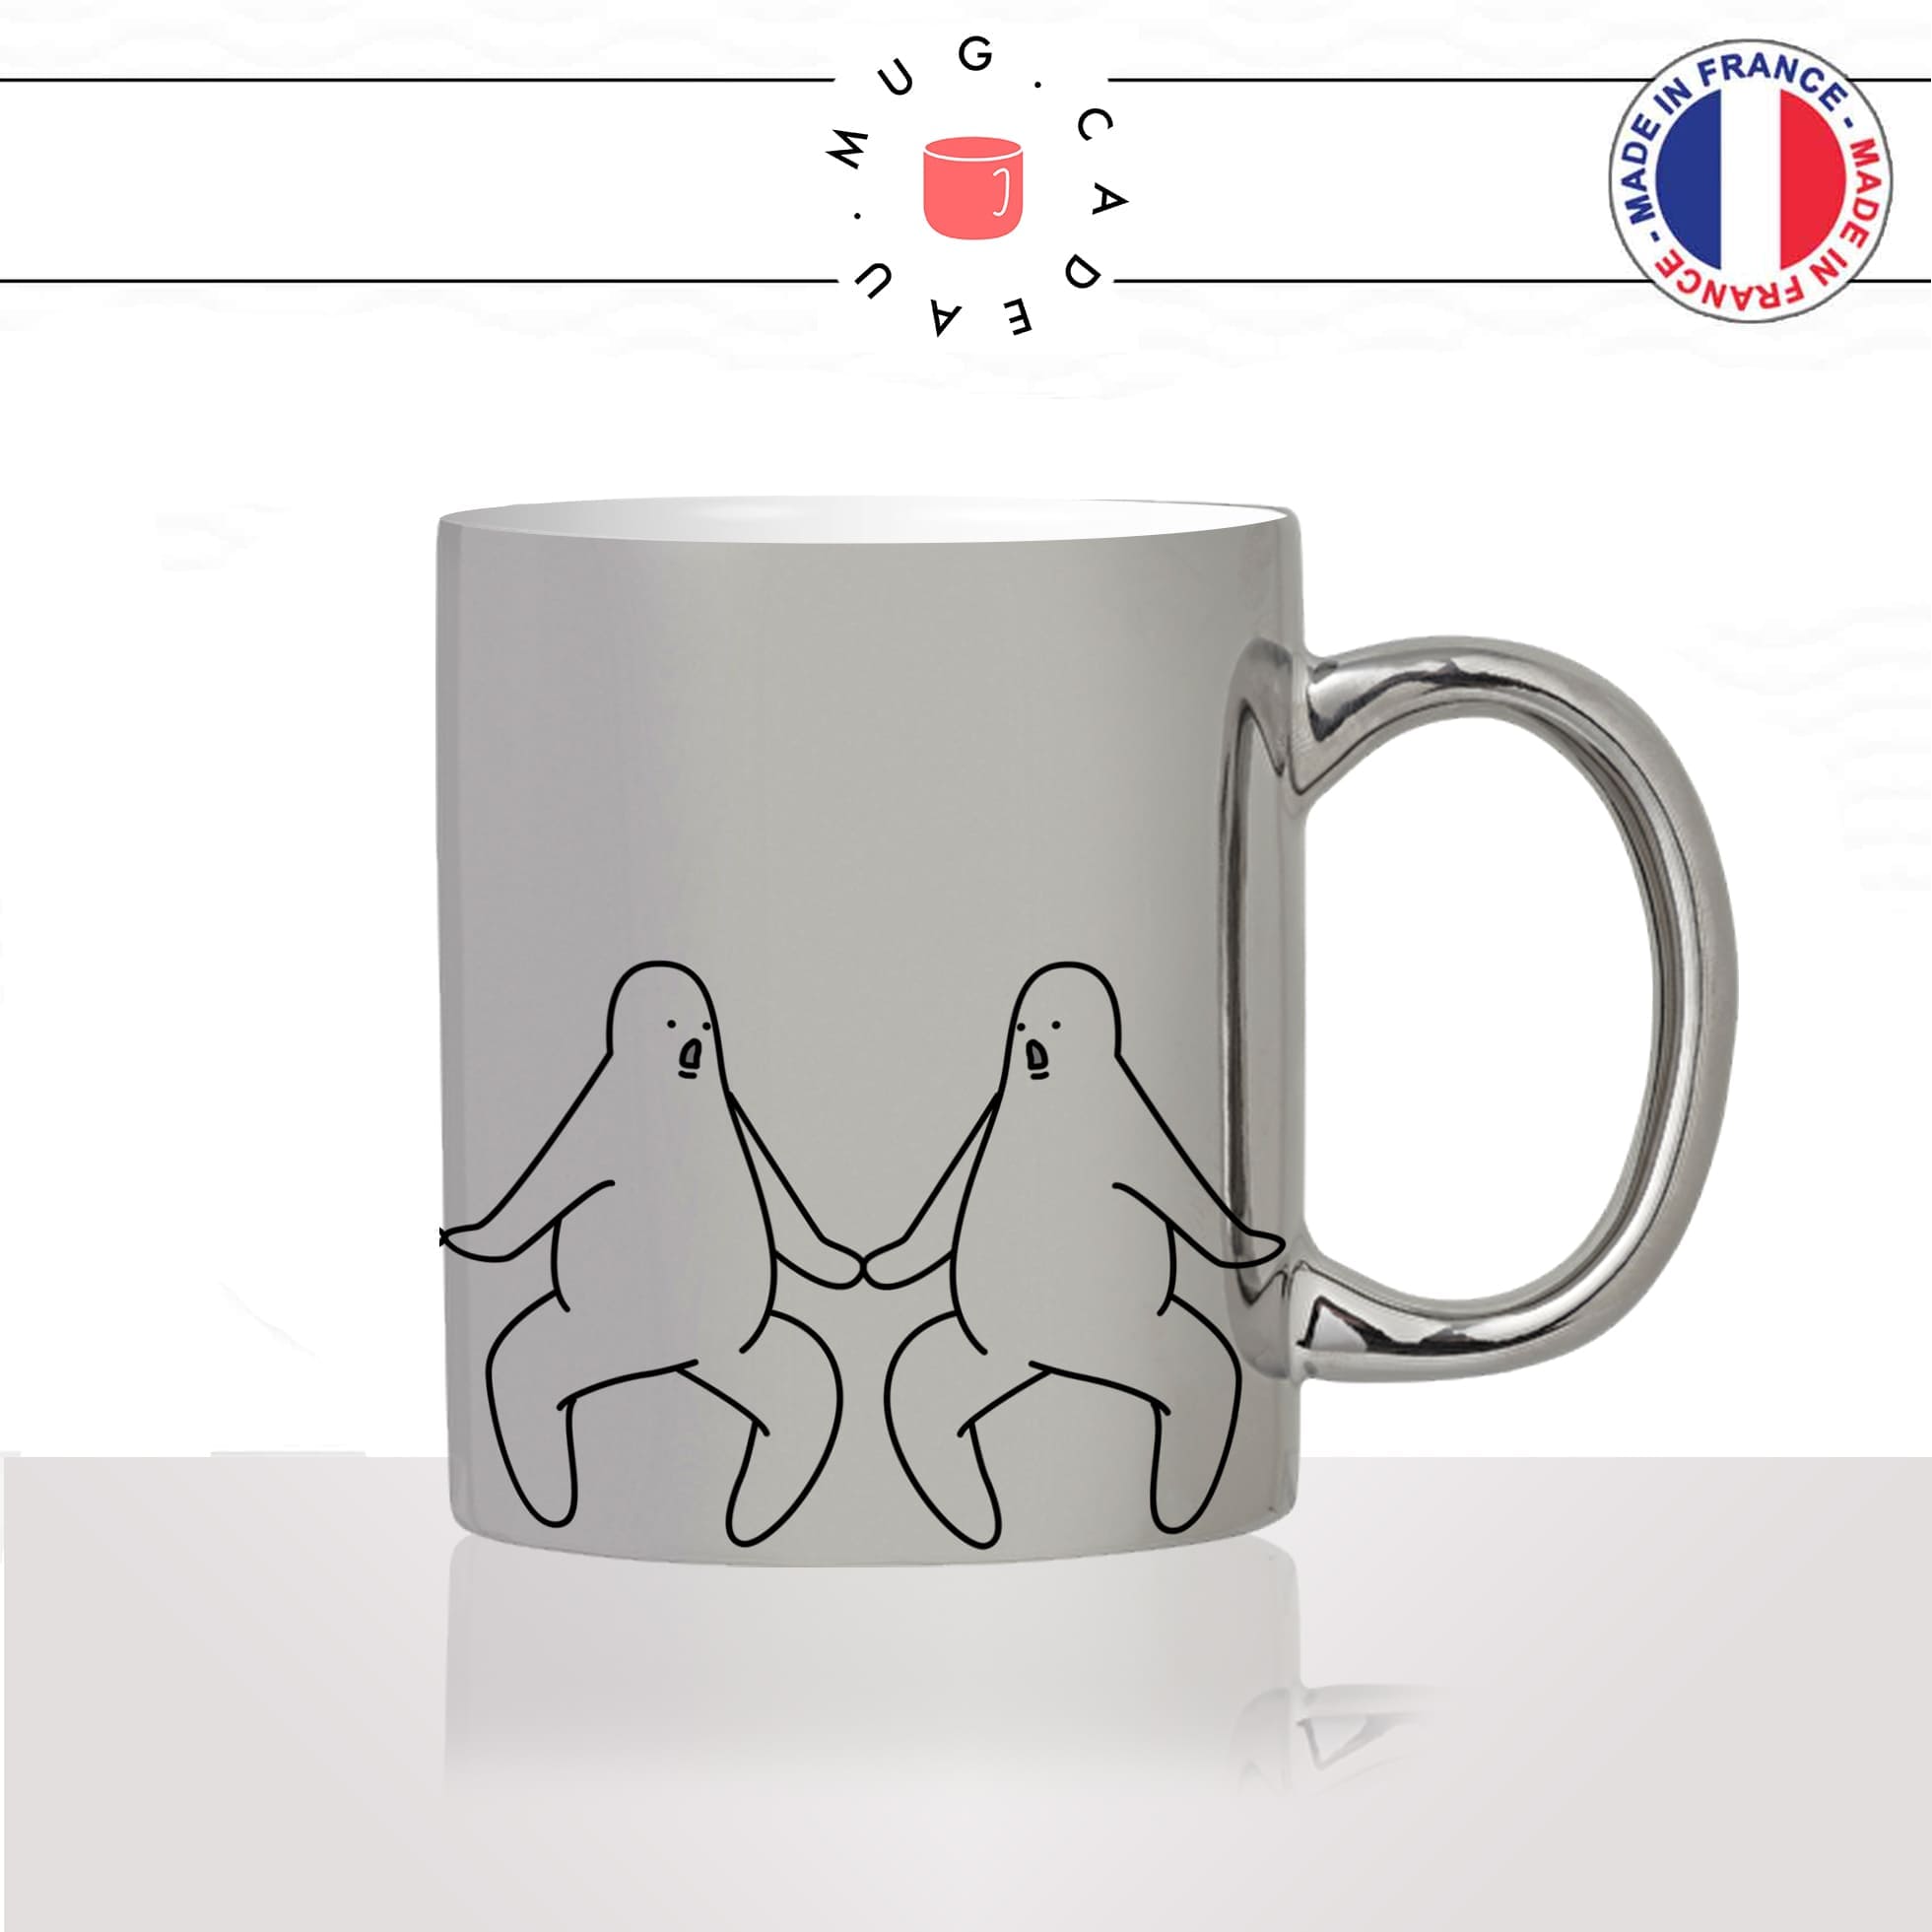 mug-tasse-argent-argenté-silver-oh-my-god-oh-mon-dieu-surprise-bonhommes-dessin-femme-homme-humour-idée-cadeau-fun-cool-café-thé2